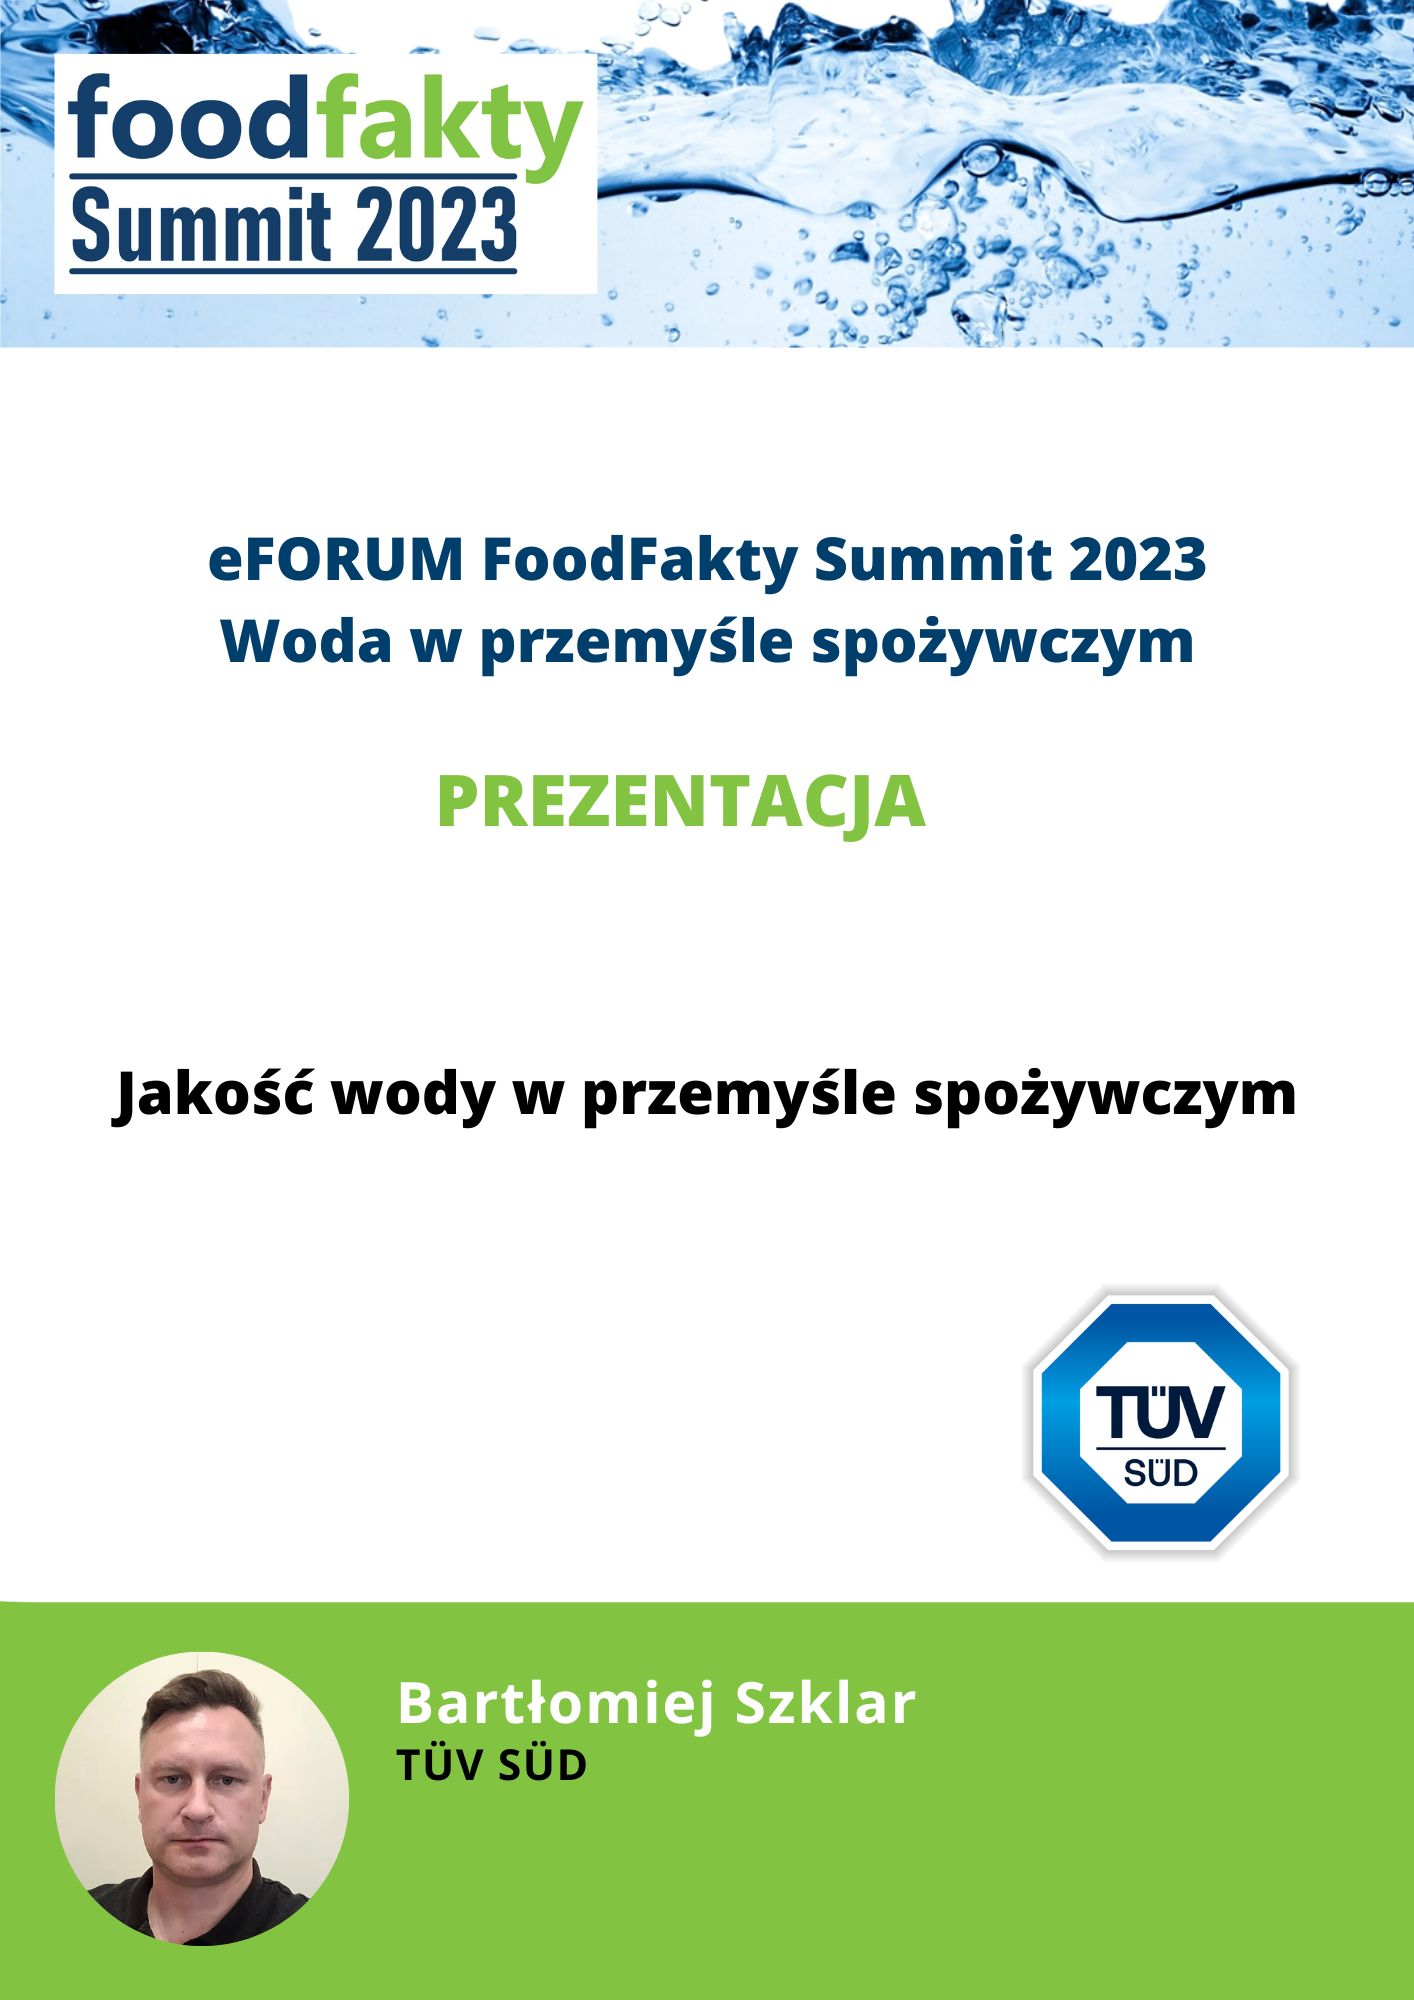 FoodFakty Summit Woda w przemyśle spożywczym - prezentacja TÜV SÜD